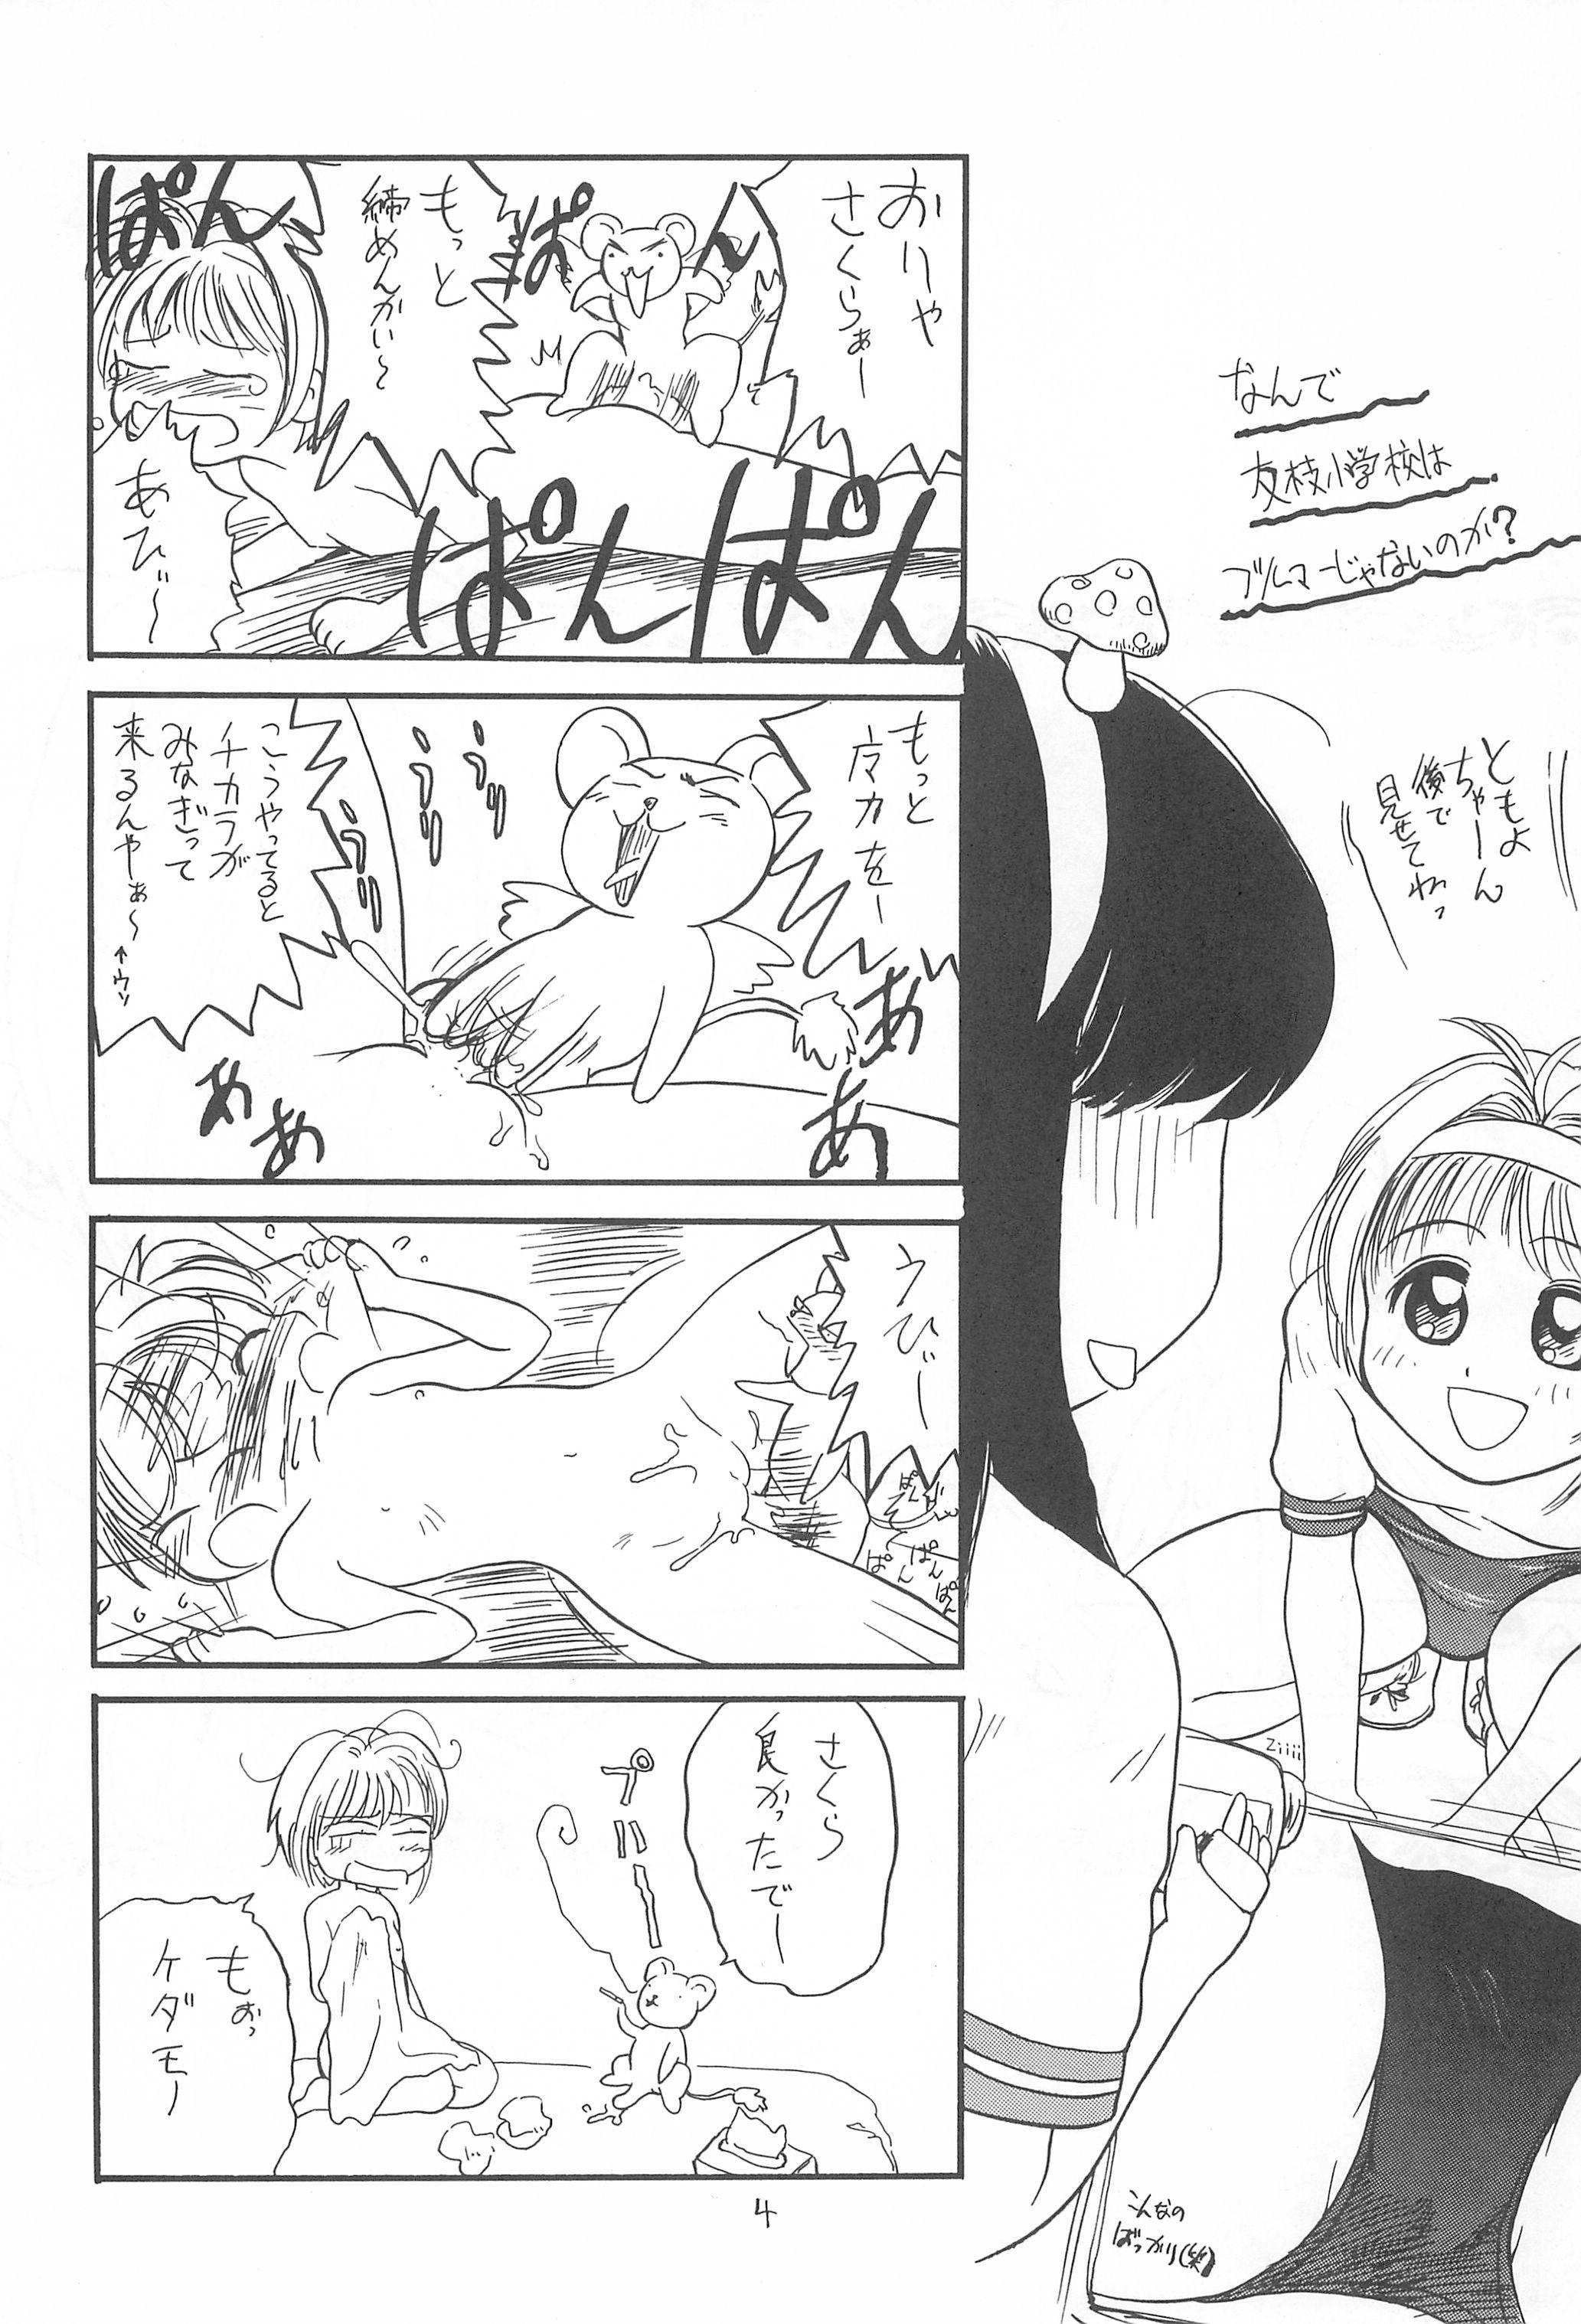 Small Tits Pakkun - Cardcaptor sakura Home - Page 6